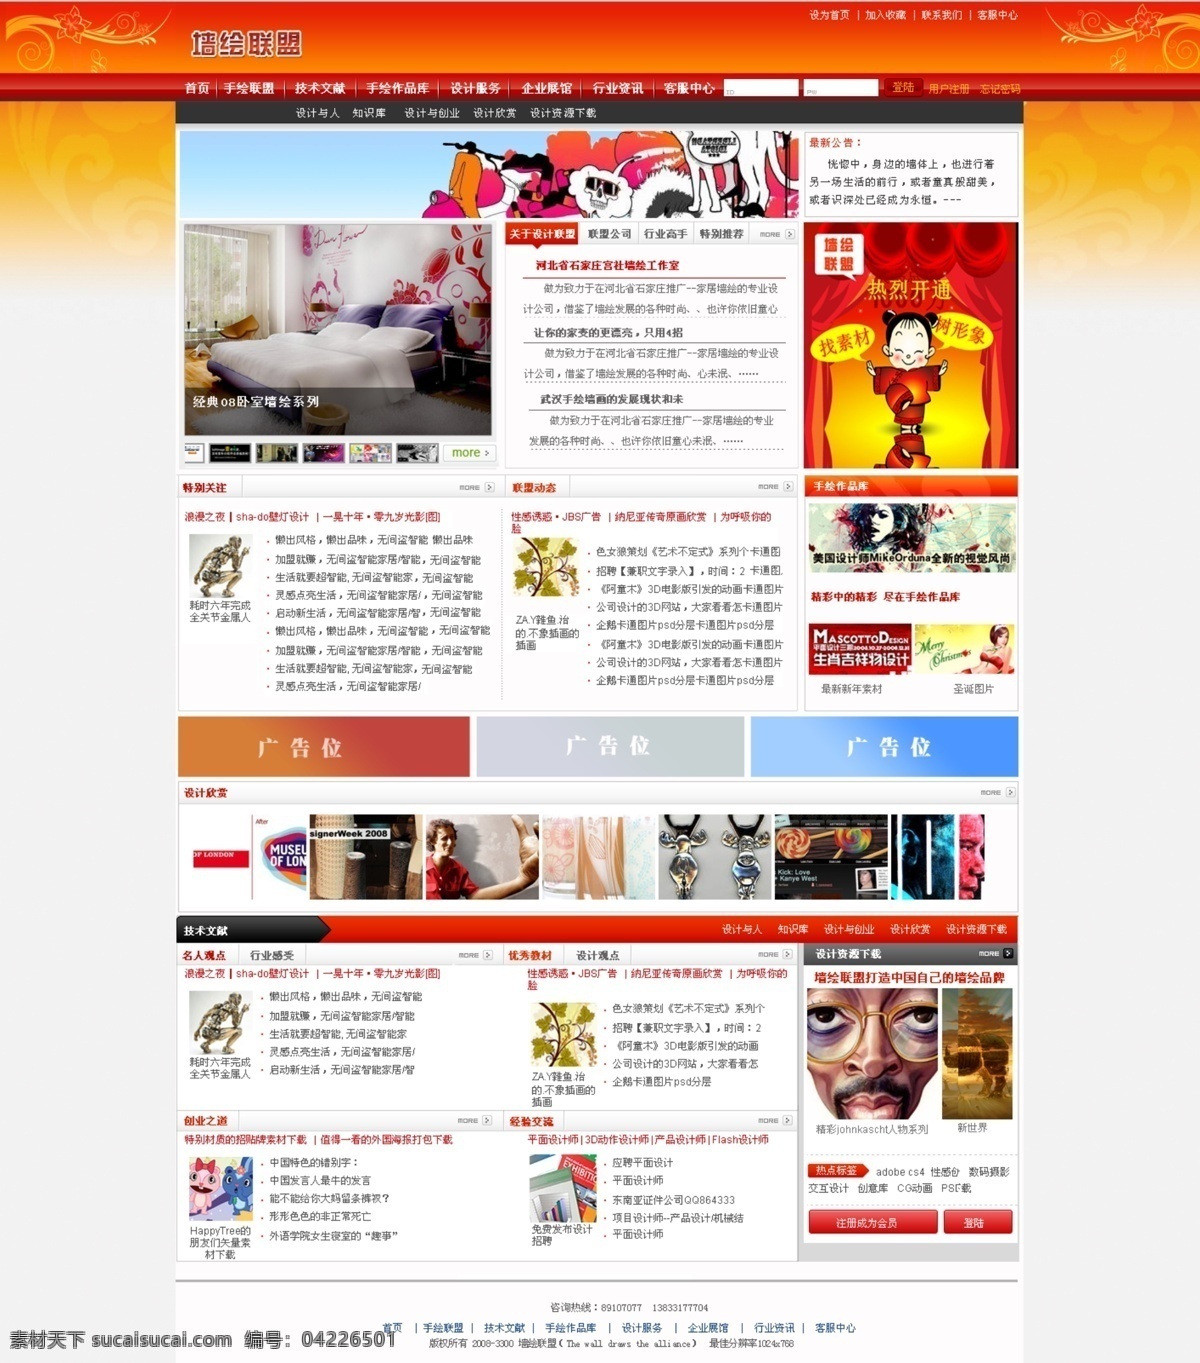 手绘 行业 网站 模板 手绘设计 中国风格 橙黄色色调 网页素材 网页模板